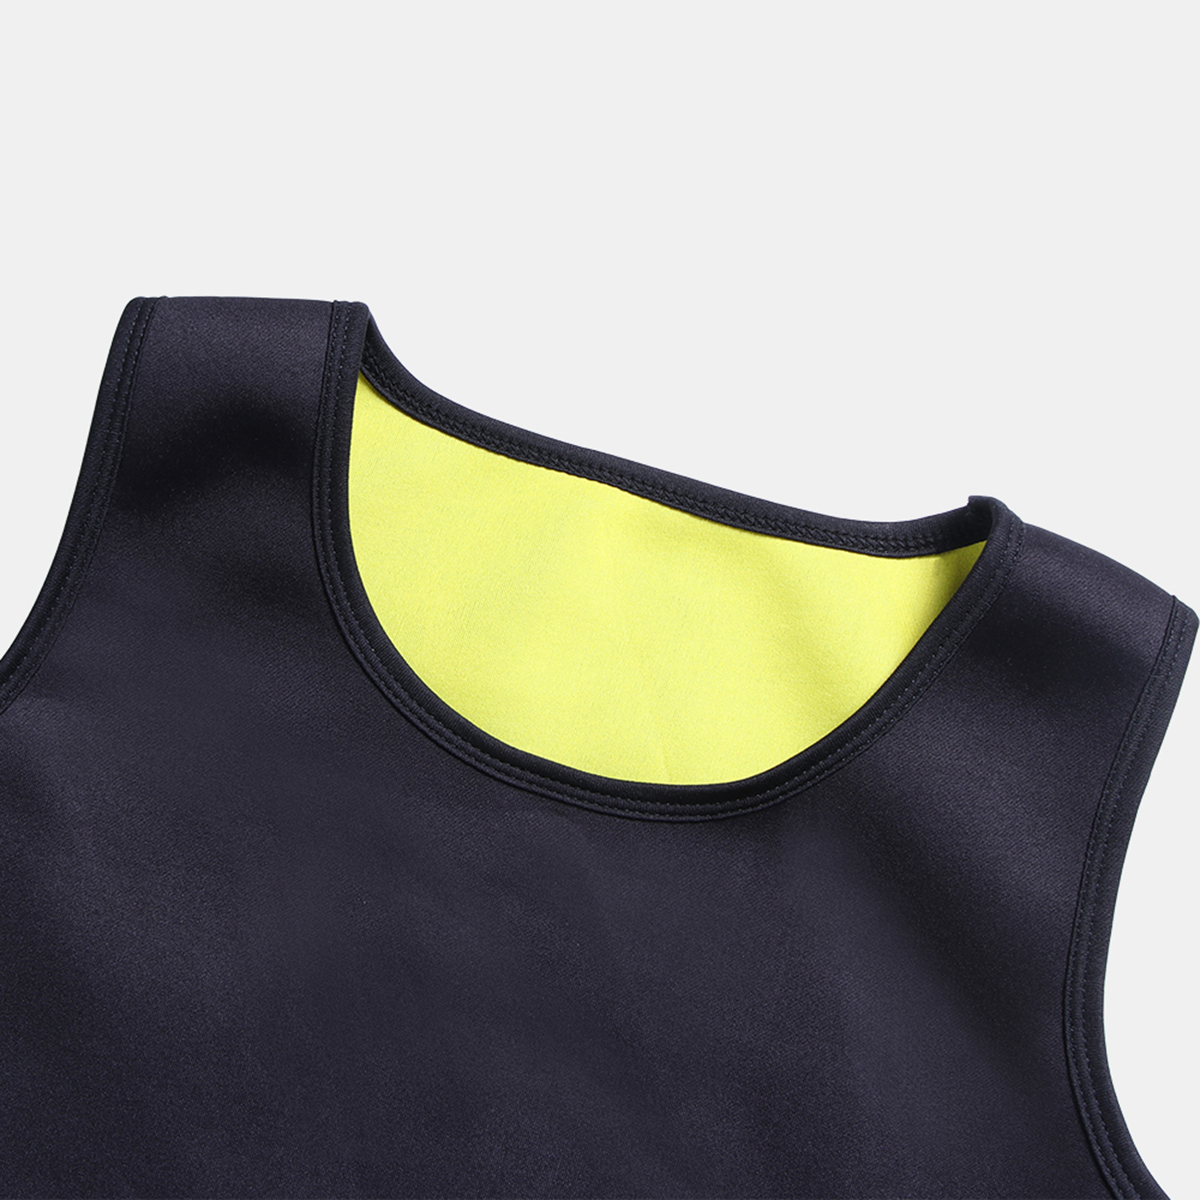 Neoprene Body Shaper Slimming Sweat Trainer Yoga Gym Cincher Vest Shapewear Men